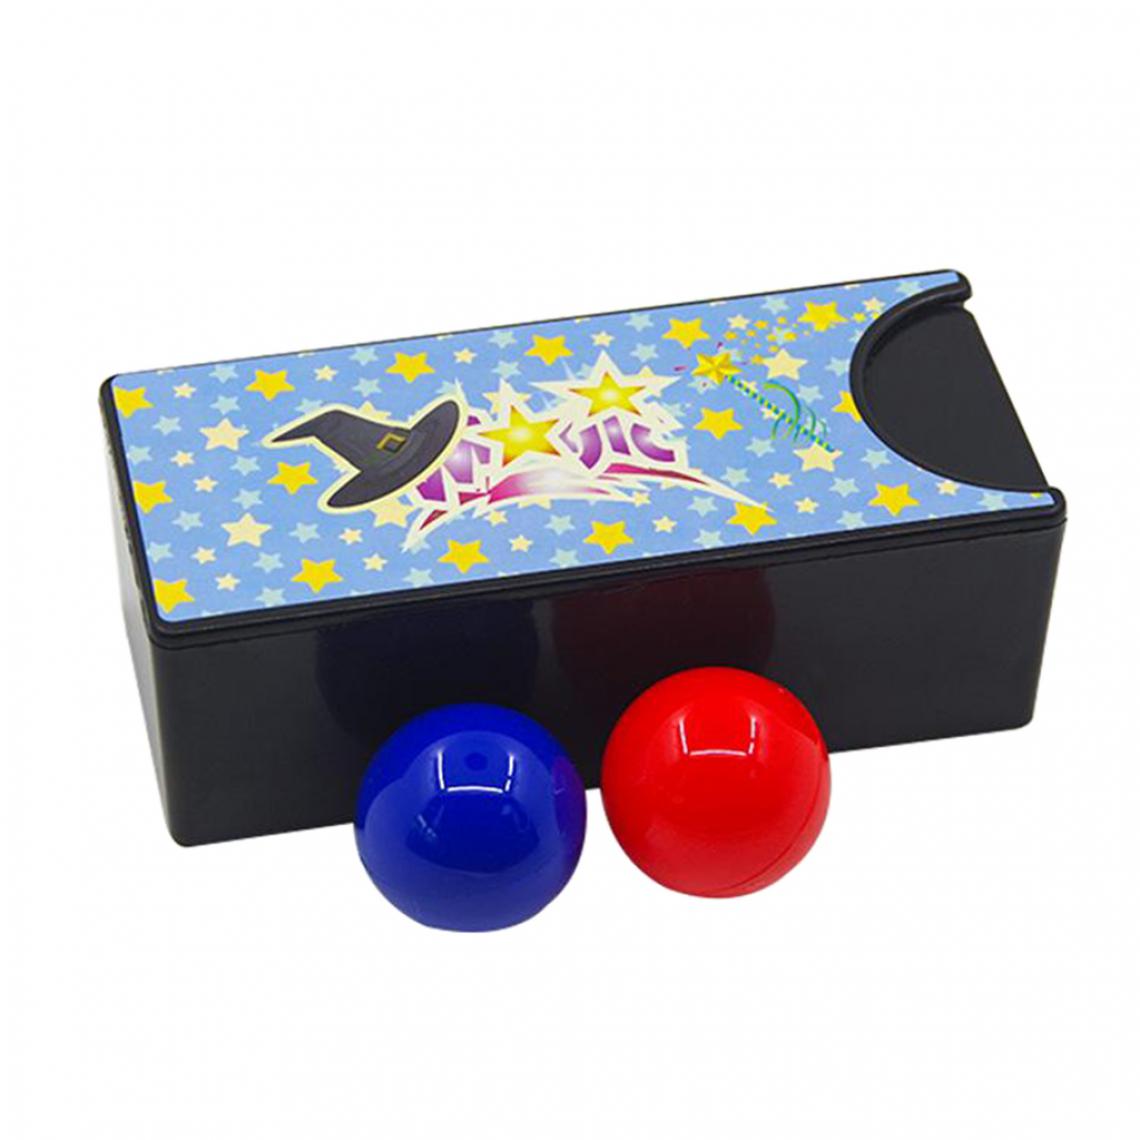 marque generique - Creative Nouvelle Boîte Magique Tournant La Boule Rouge dans Le Bleu Balle Mystère Boîte Facile Jouets pour Enfants Enfants Adultes trick Toy cadeaux - Objets déco